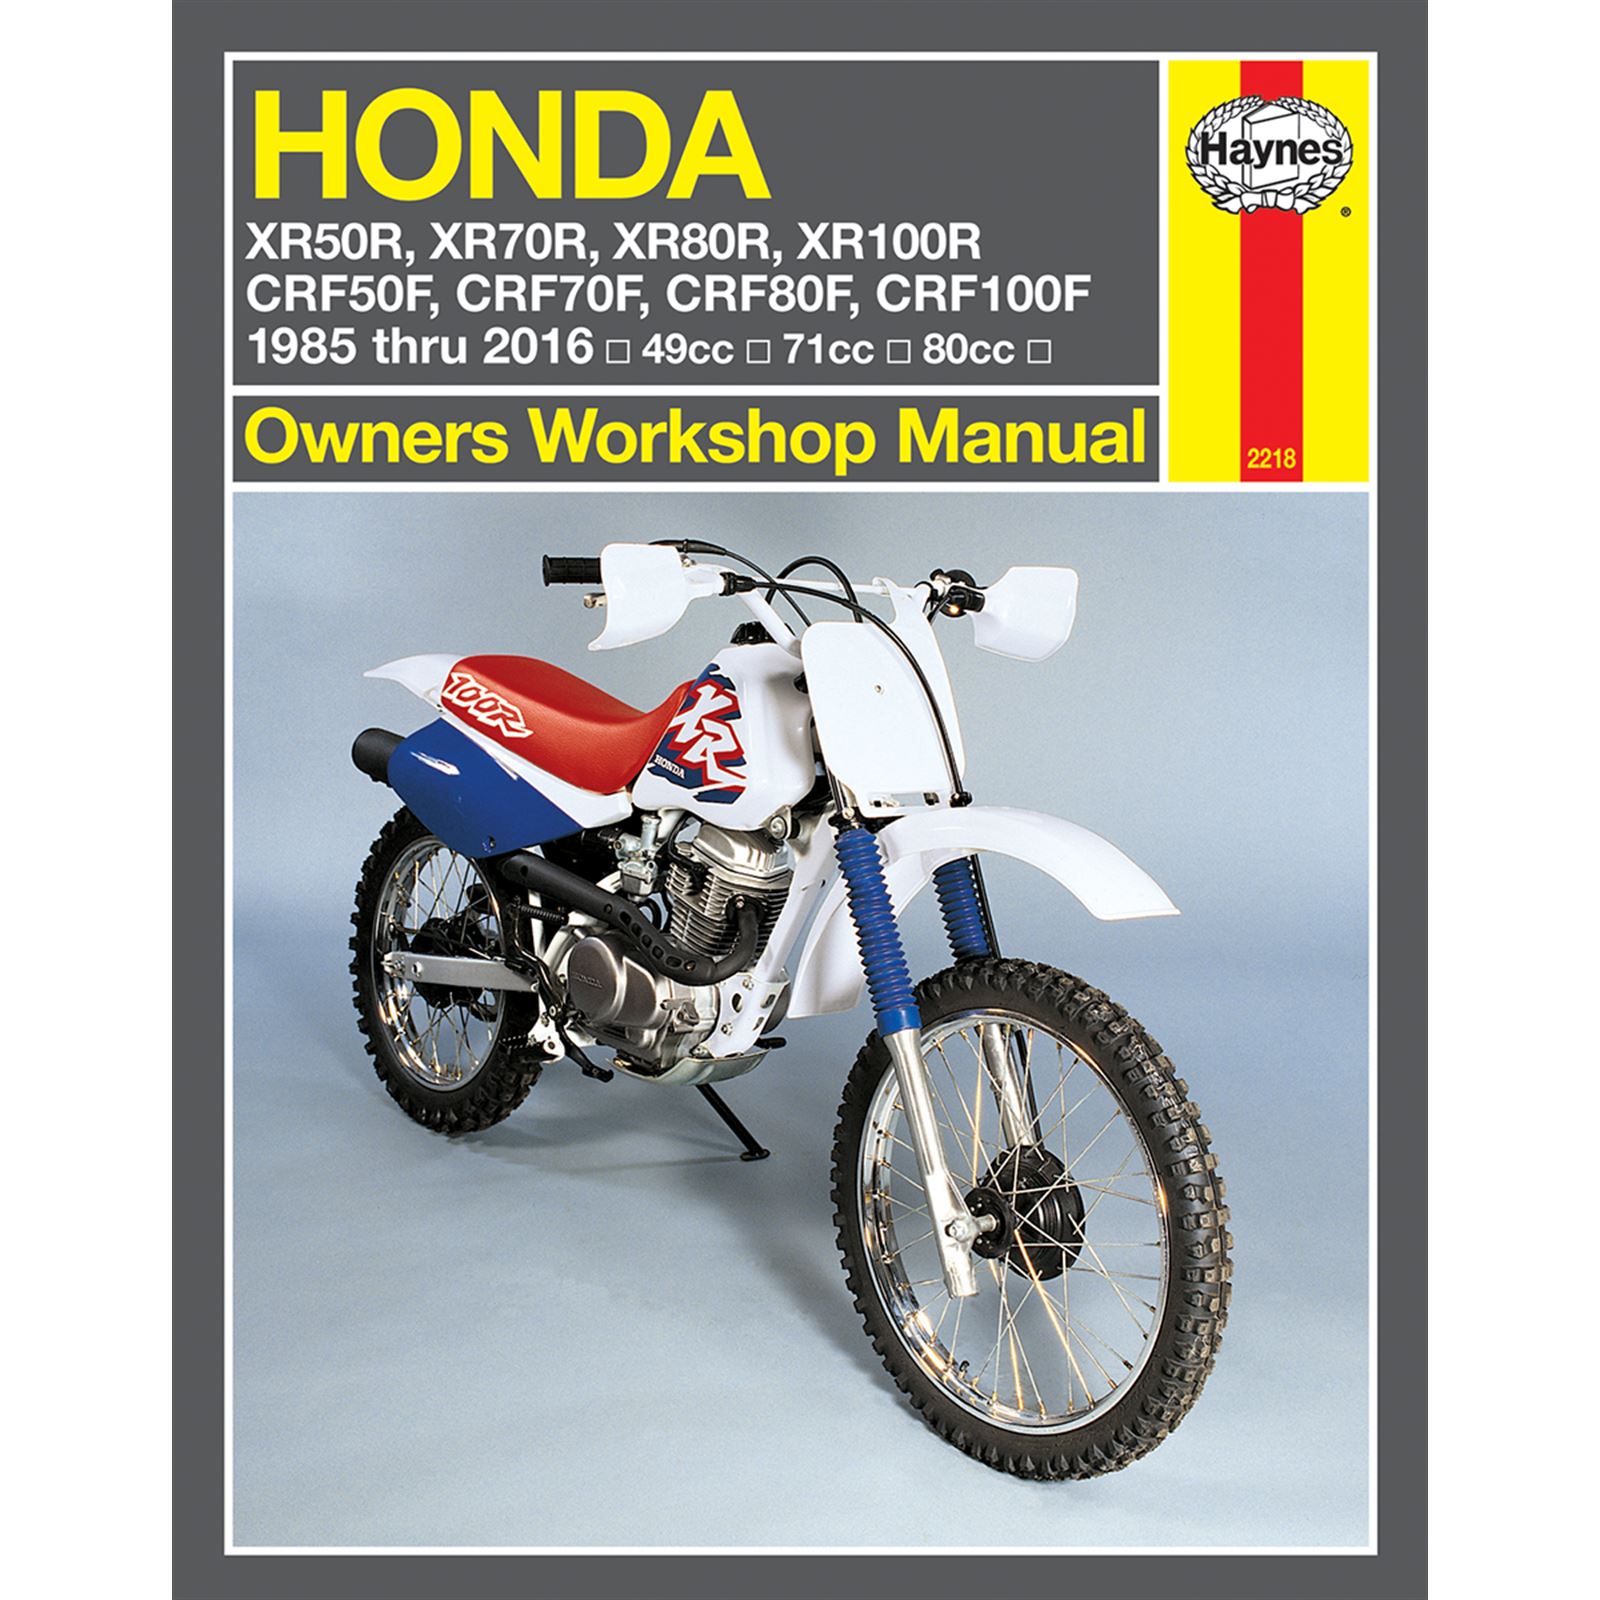 Haynes Manuals Manual for Honda XR80R/XR100R